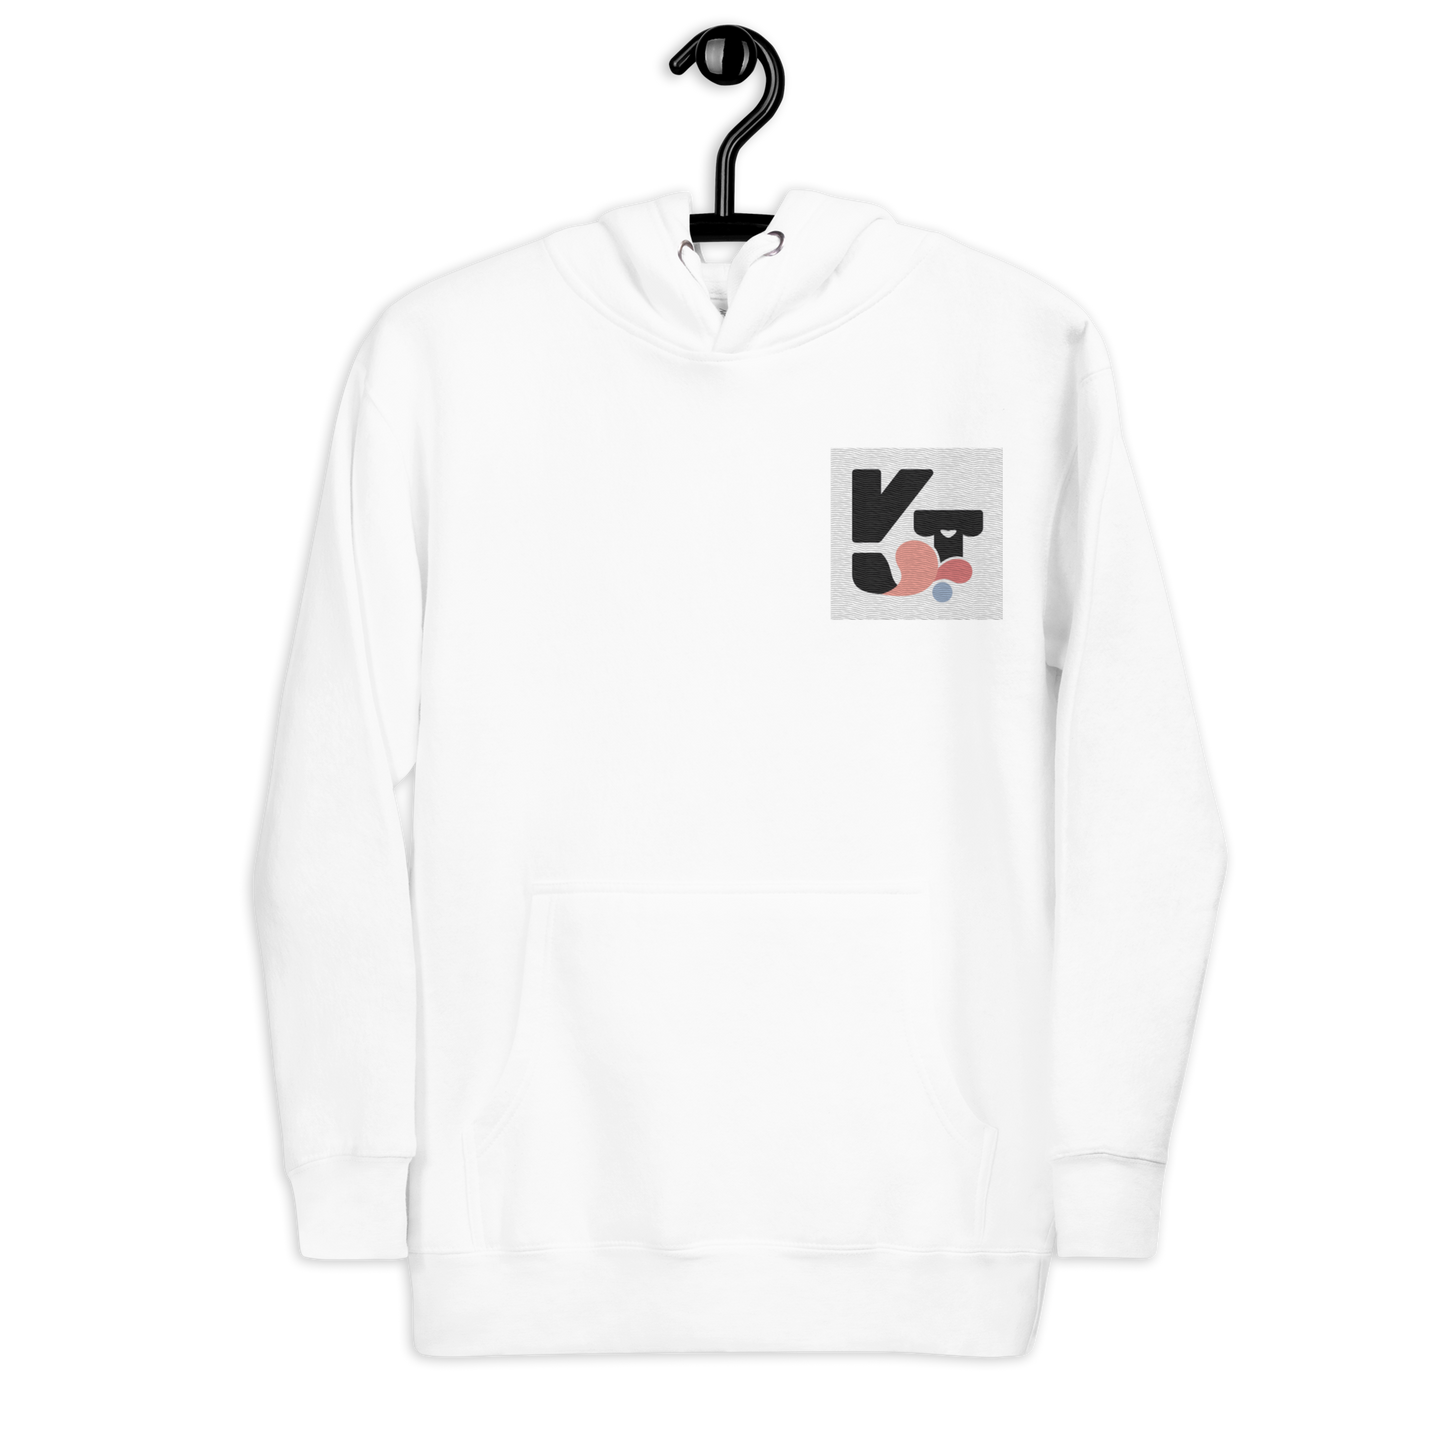 Unisex-Kapuzenpullover "Wip Wip Hurra" der Marke Klexgetier. Weißer Pullover mit grafischem Logo in Grau und Pastellfarben.